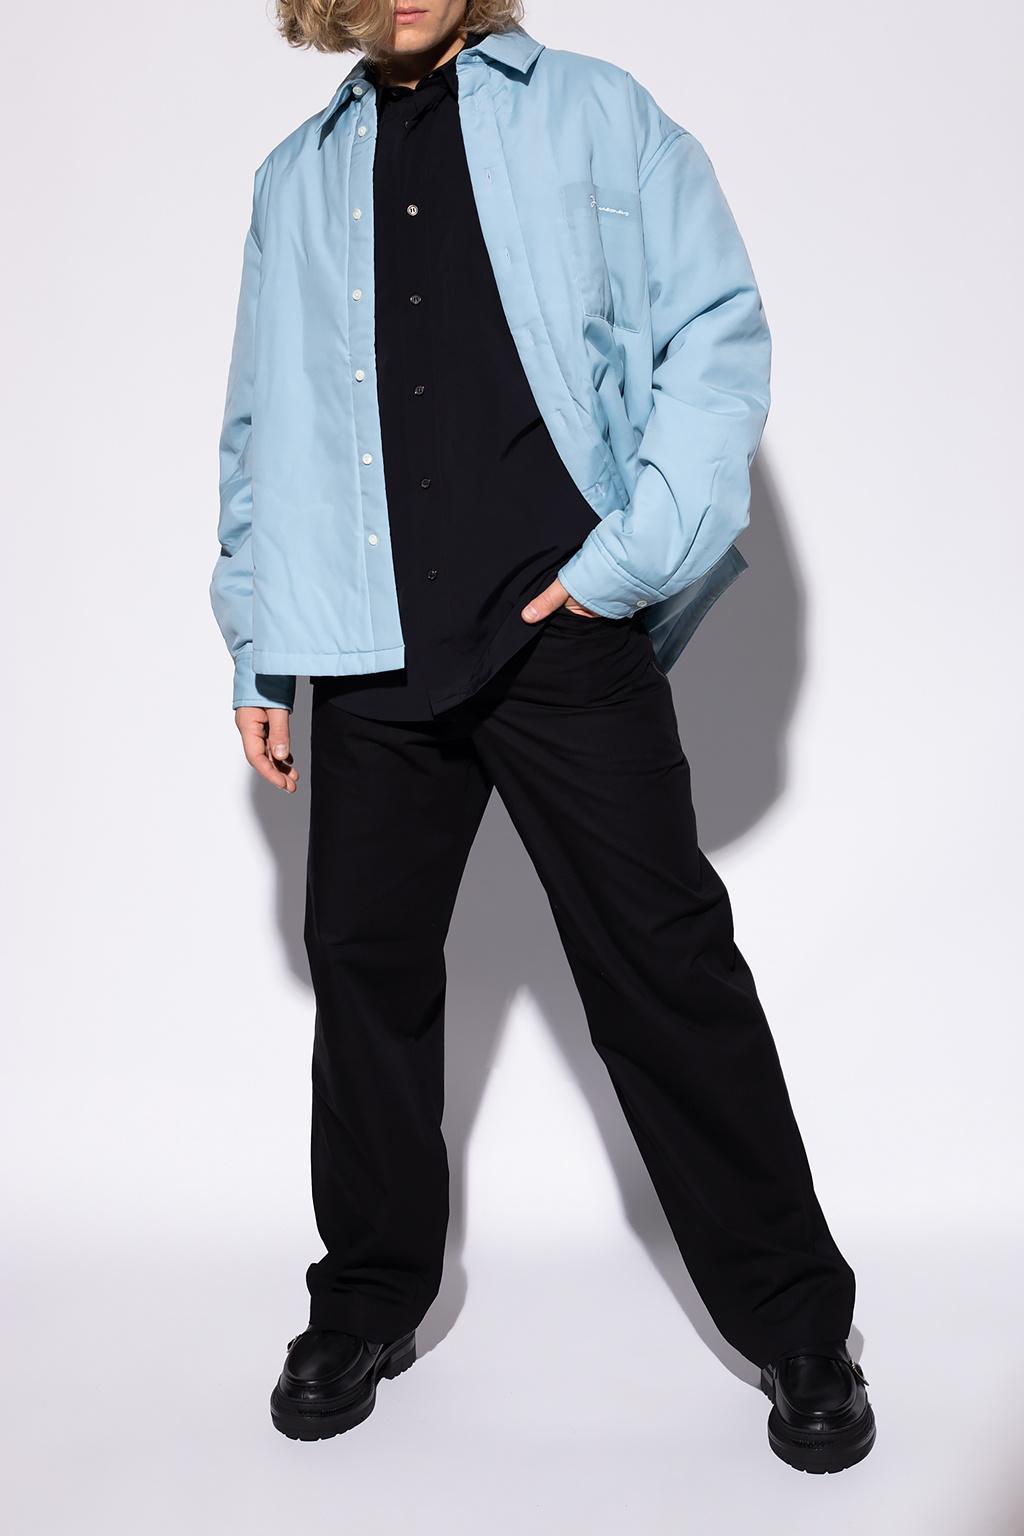 Jacquemus Yohji Yamamoto long shirt jacket